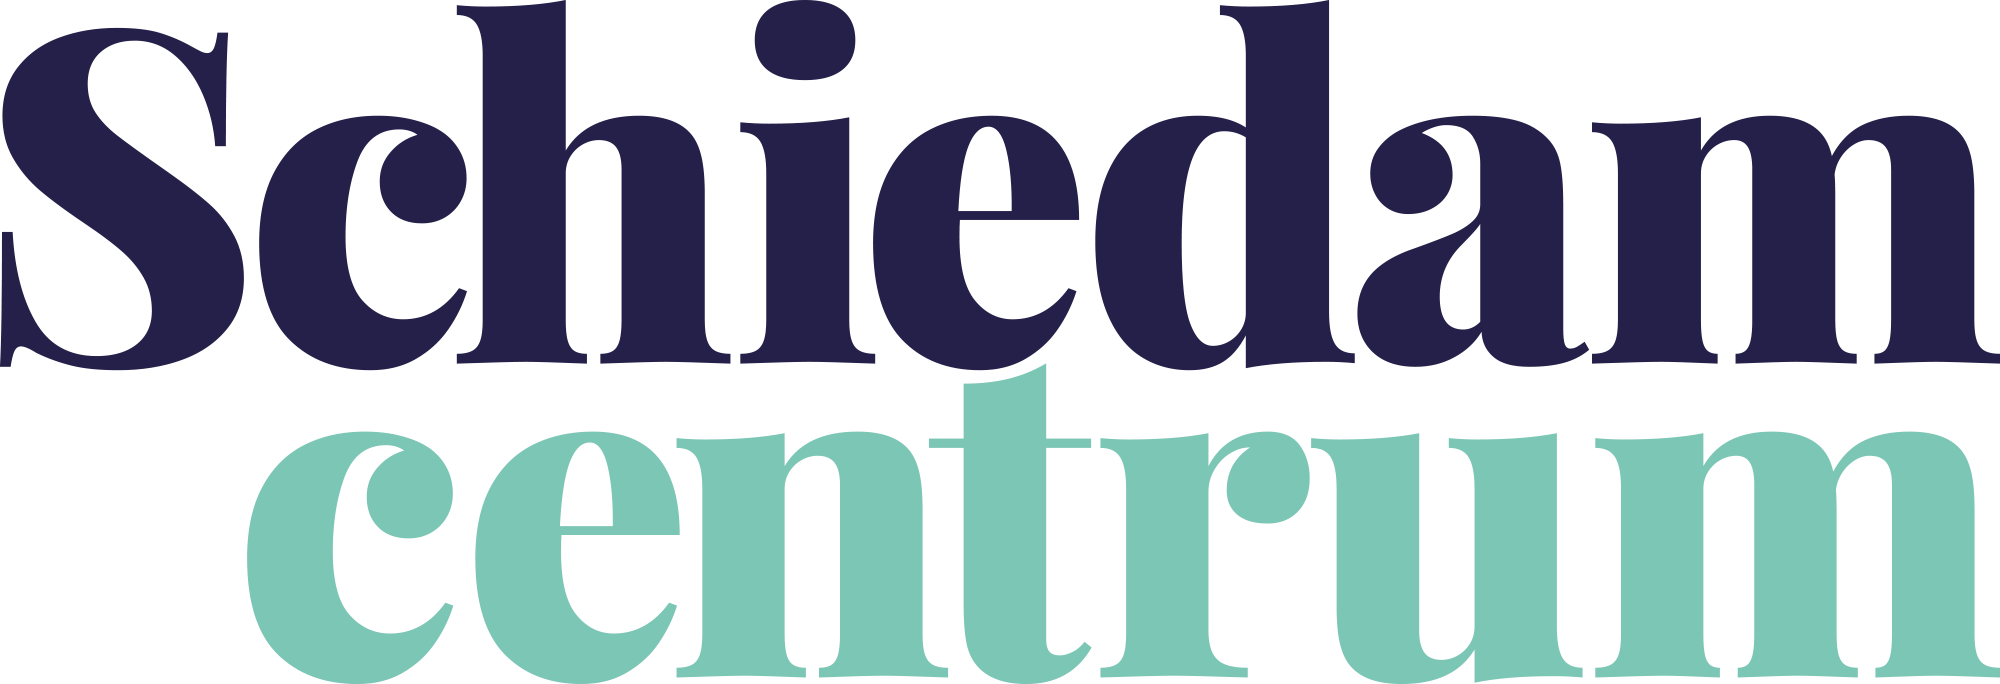 Logo Schiedam Centrum